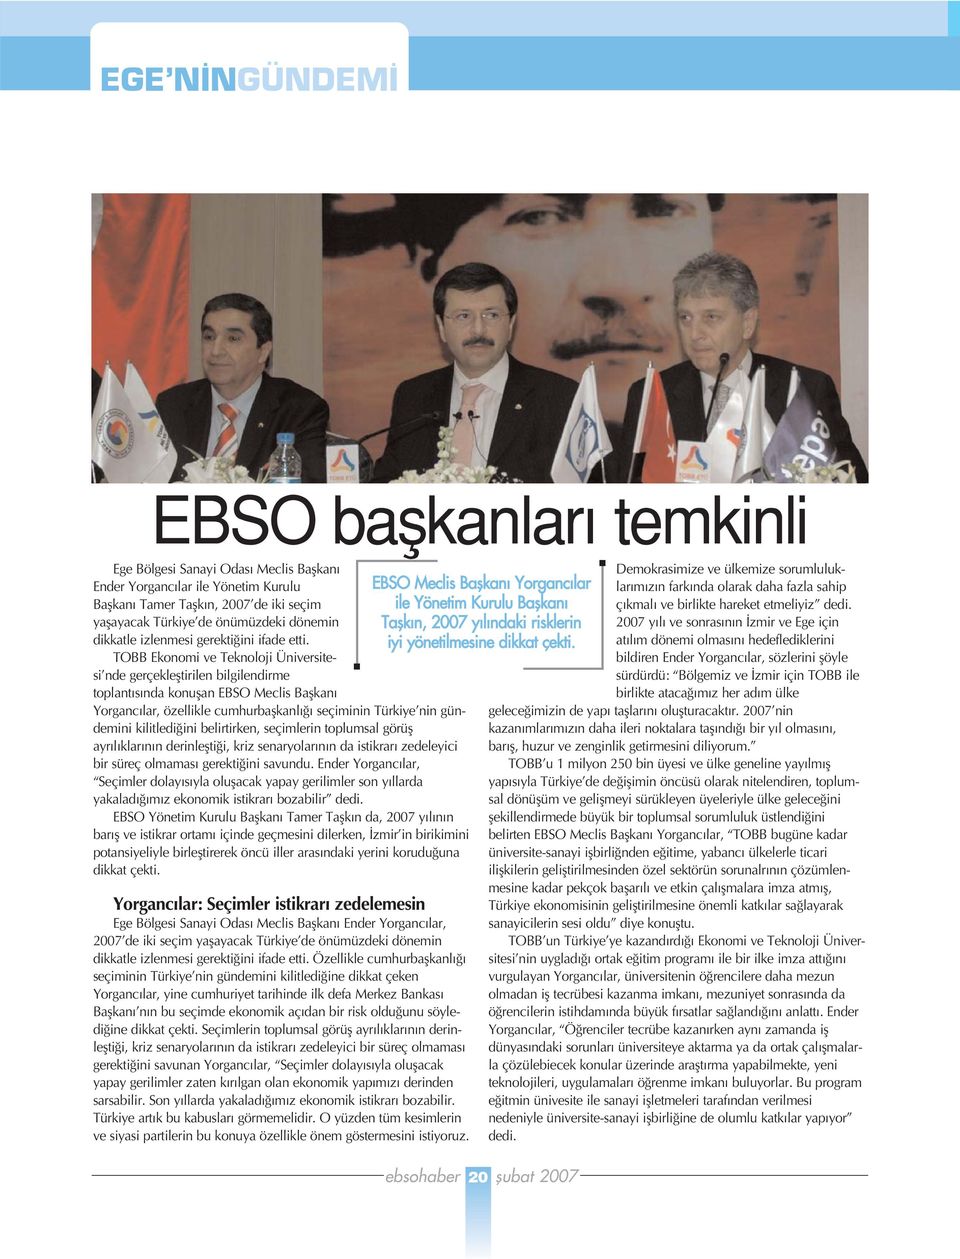 TOBB Ekonomi ve Teknoloji Üniversitesi nde gerçeklefltirilen bilgilendirme toplant s nda konuflan EBSO Meclis Baflkan Yorganc lar, özellikle cumhurbaflkanl seçiminin Türkiye nin gündemini kilitledi